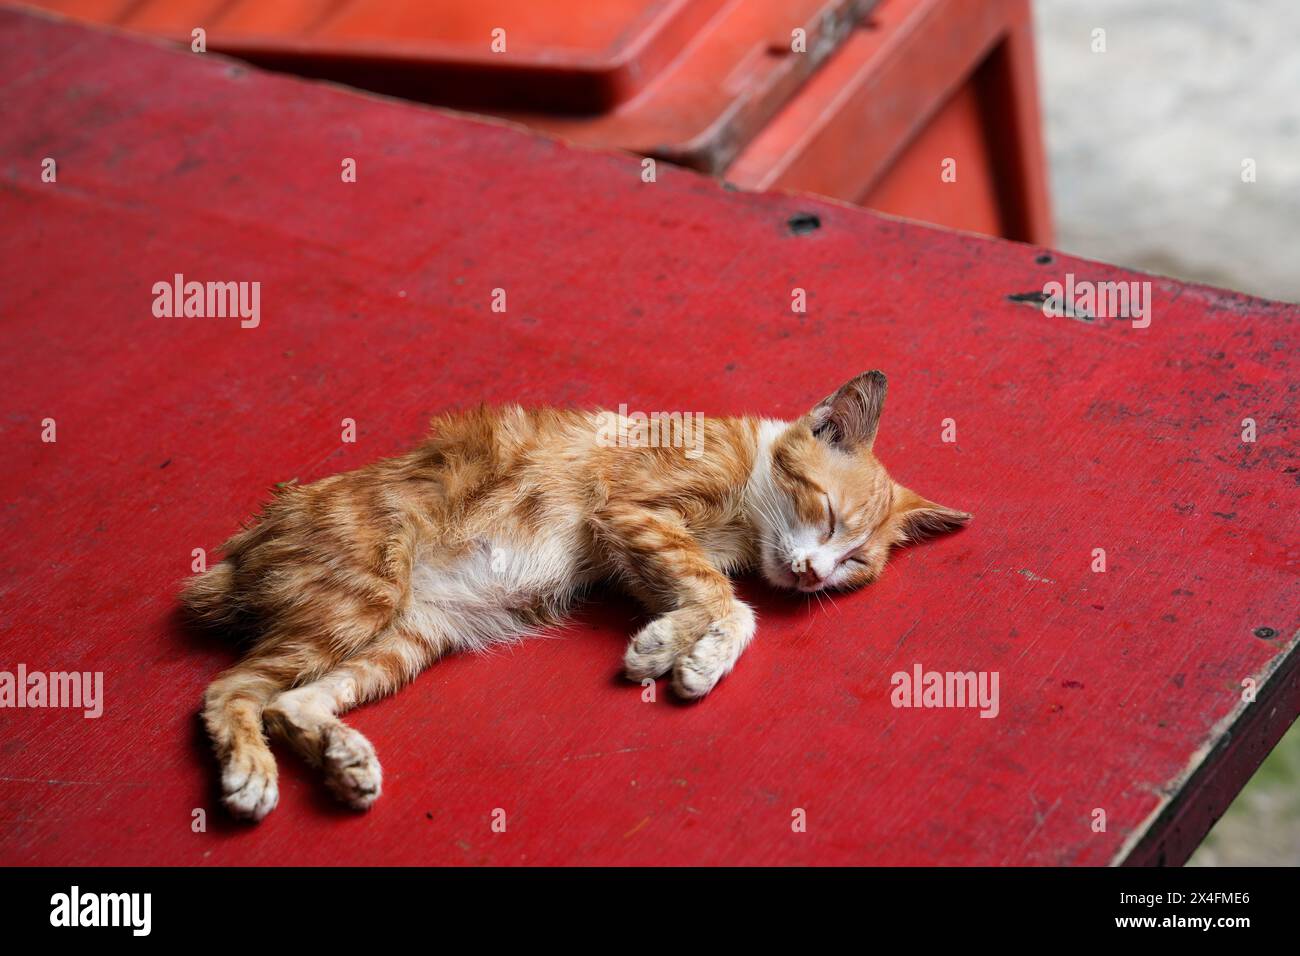 Ein entzückendes Ingwerkätzchen schläft friedlich auf einer leuchtend roten Holzbank. Die rustikale Umgebung und die entspannte Haltung wecken ein Gefühl der Ruhe und des Krieges Stockfoto